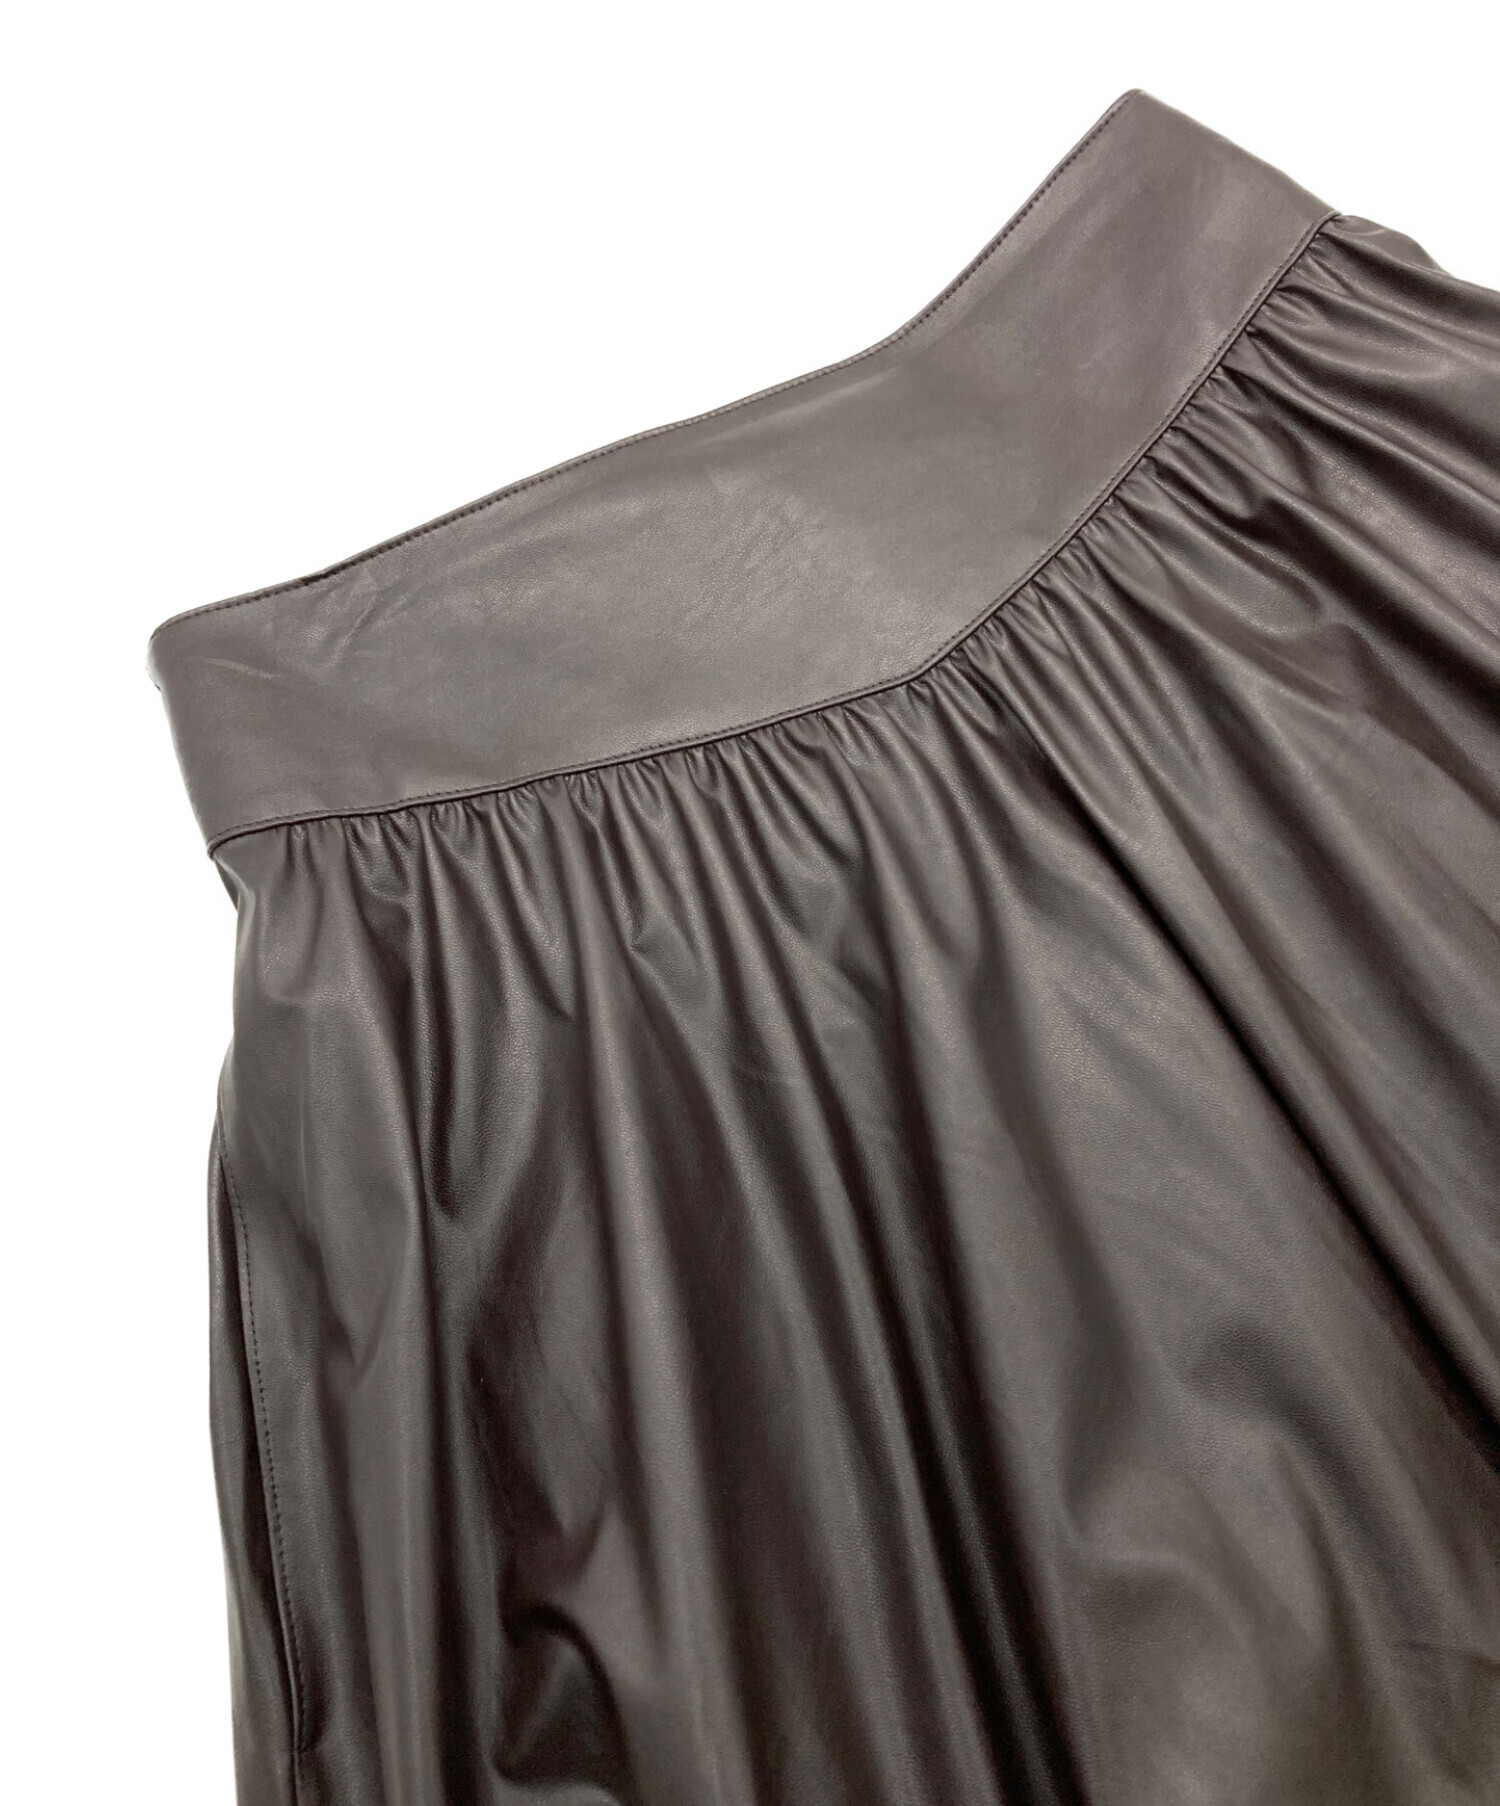 EPOCA (エポカ) シンセティックレザースカート ブラウン サイズ:38